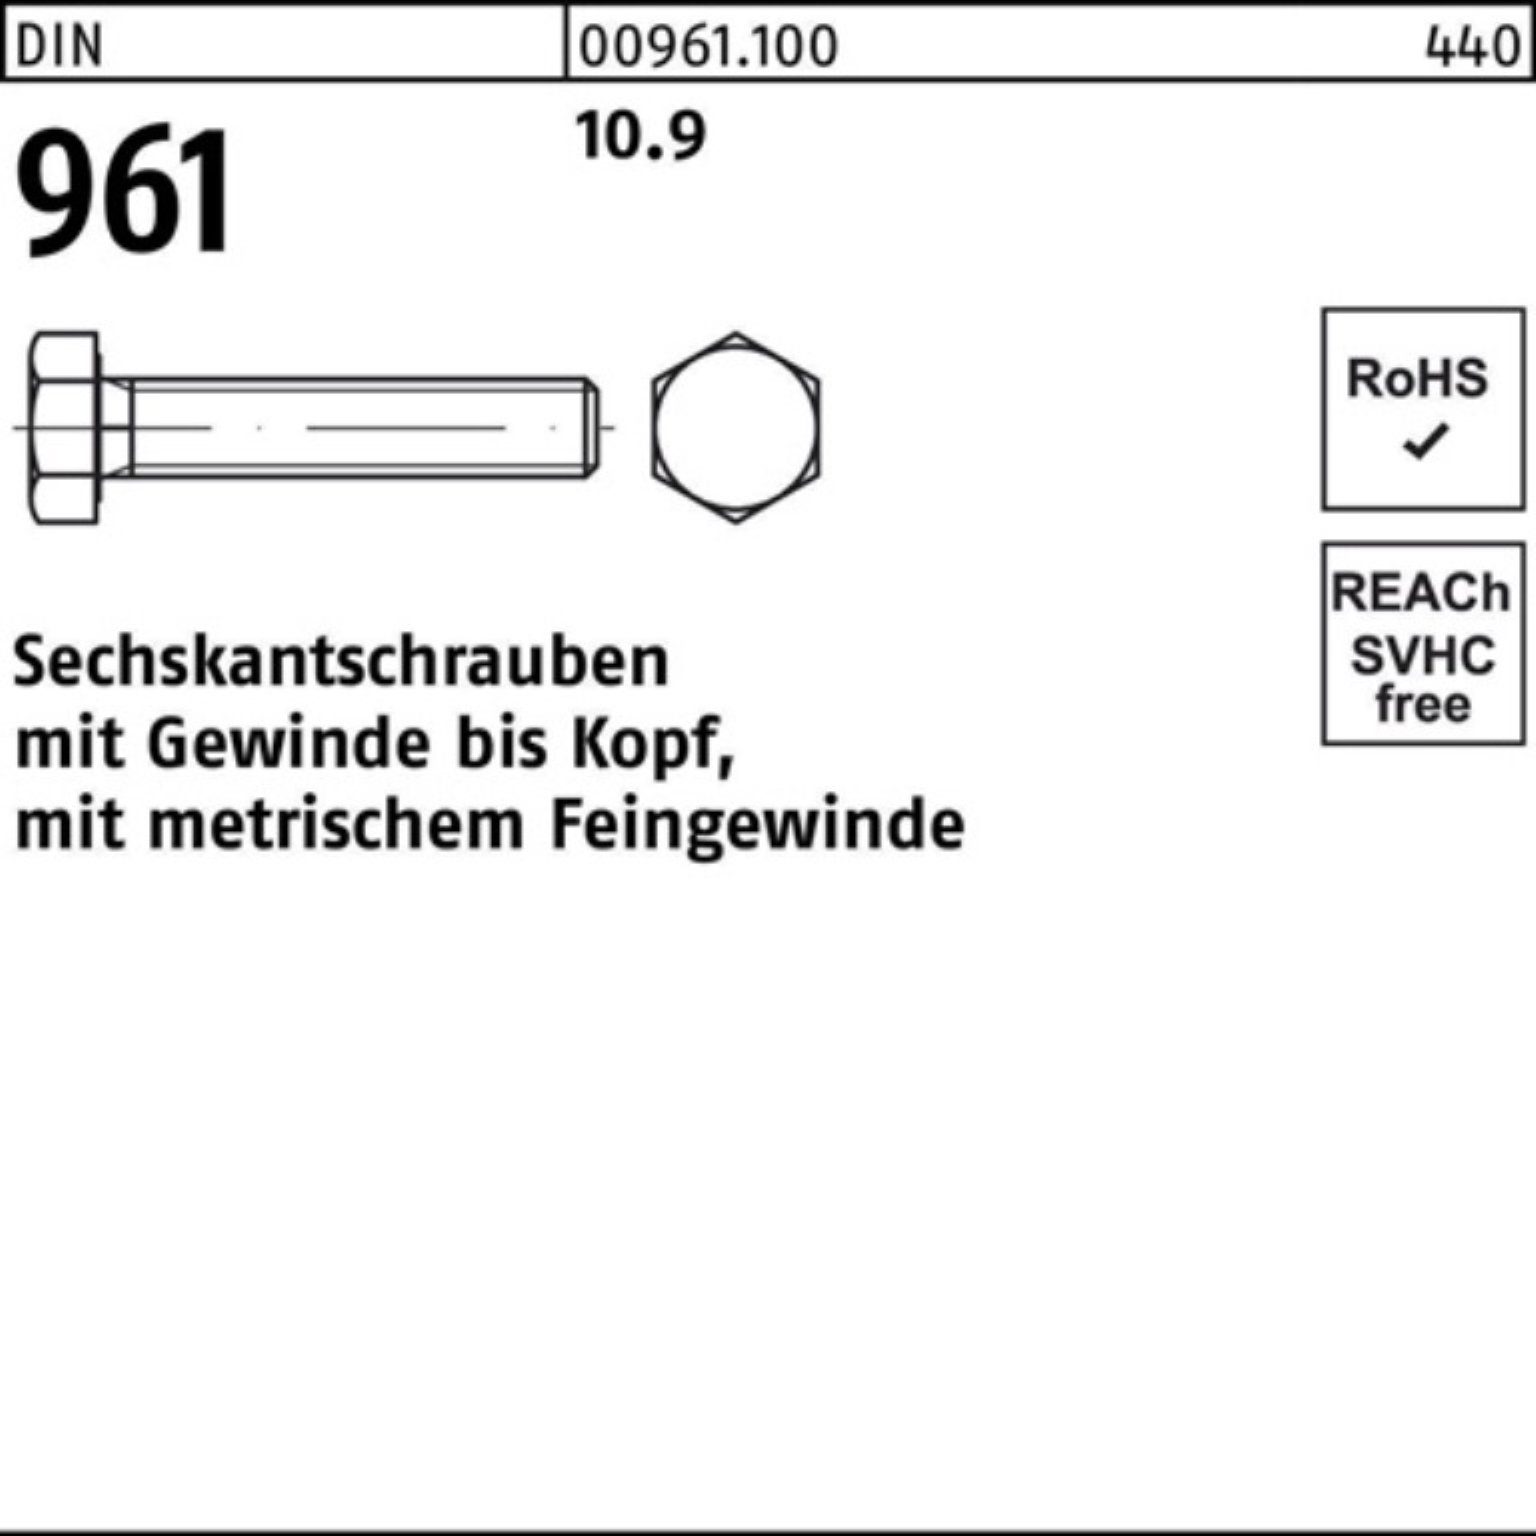 Reyher Sechskantschraube 100er Pack Sechskantschraube VG 10.9 M10x1,25x100 Stück 961 D 100 DIN